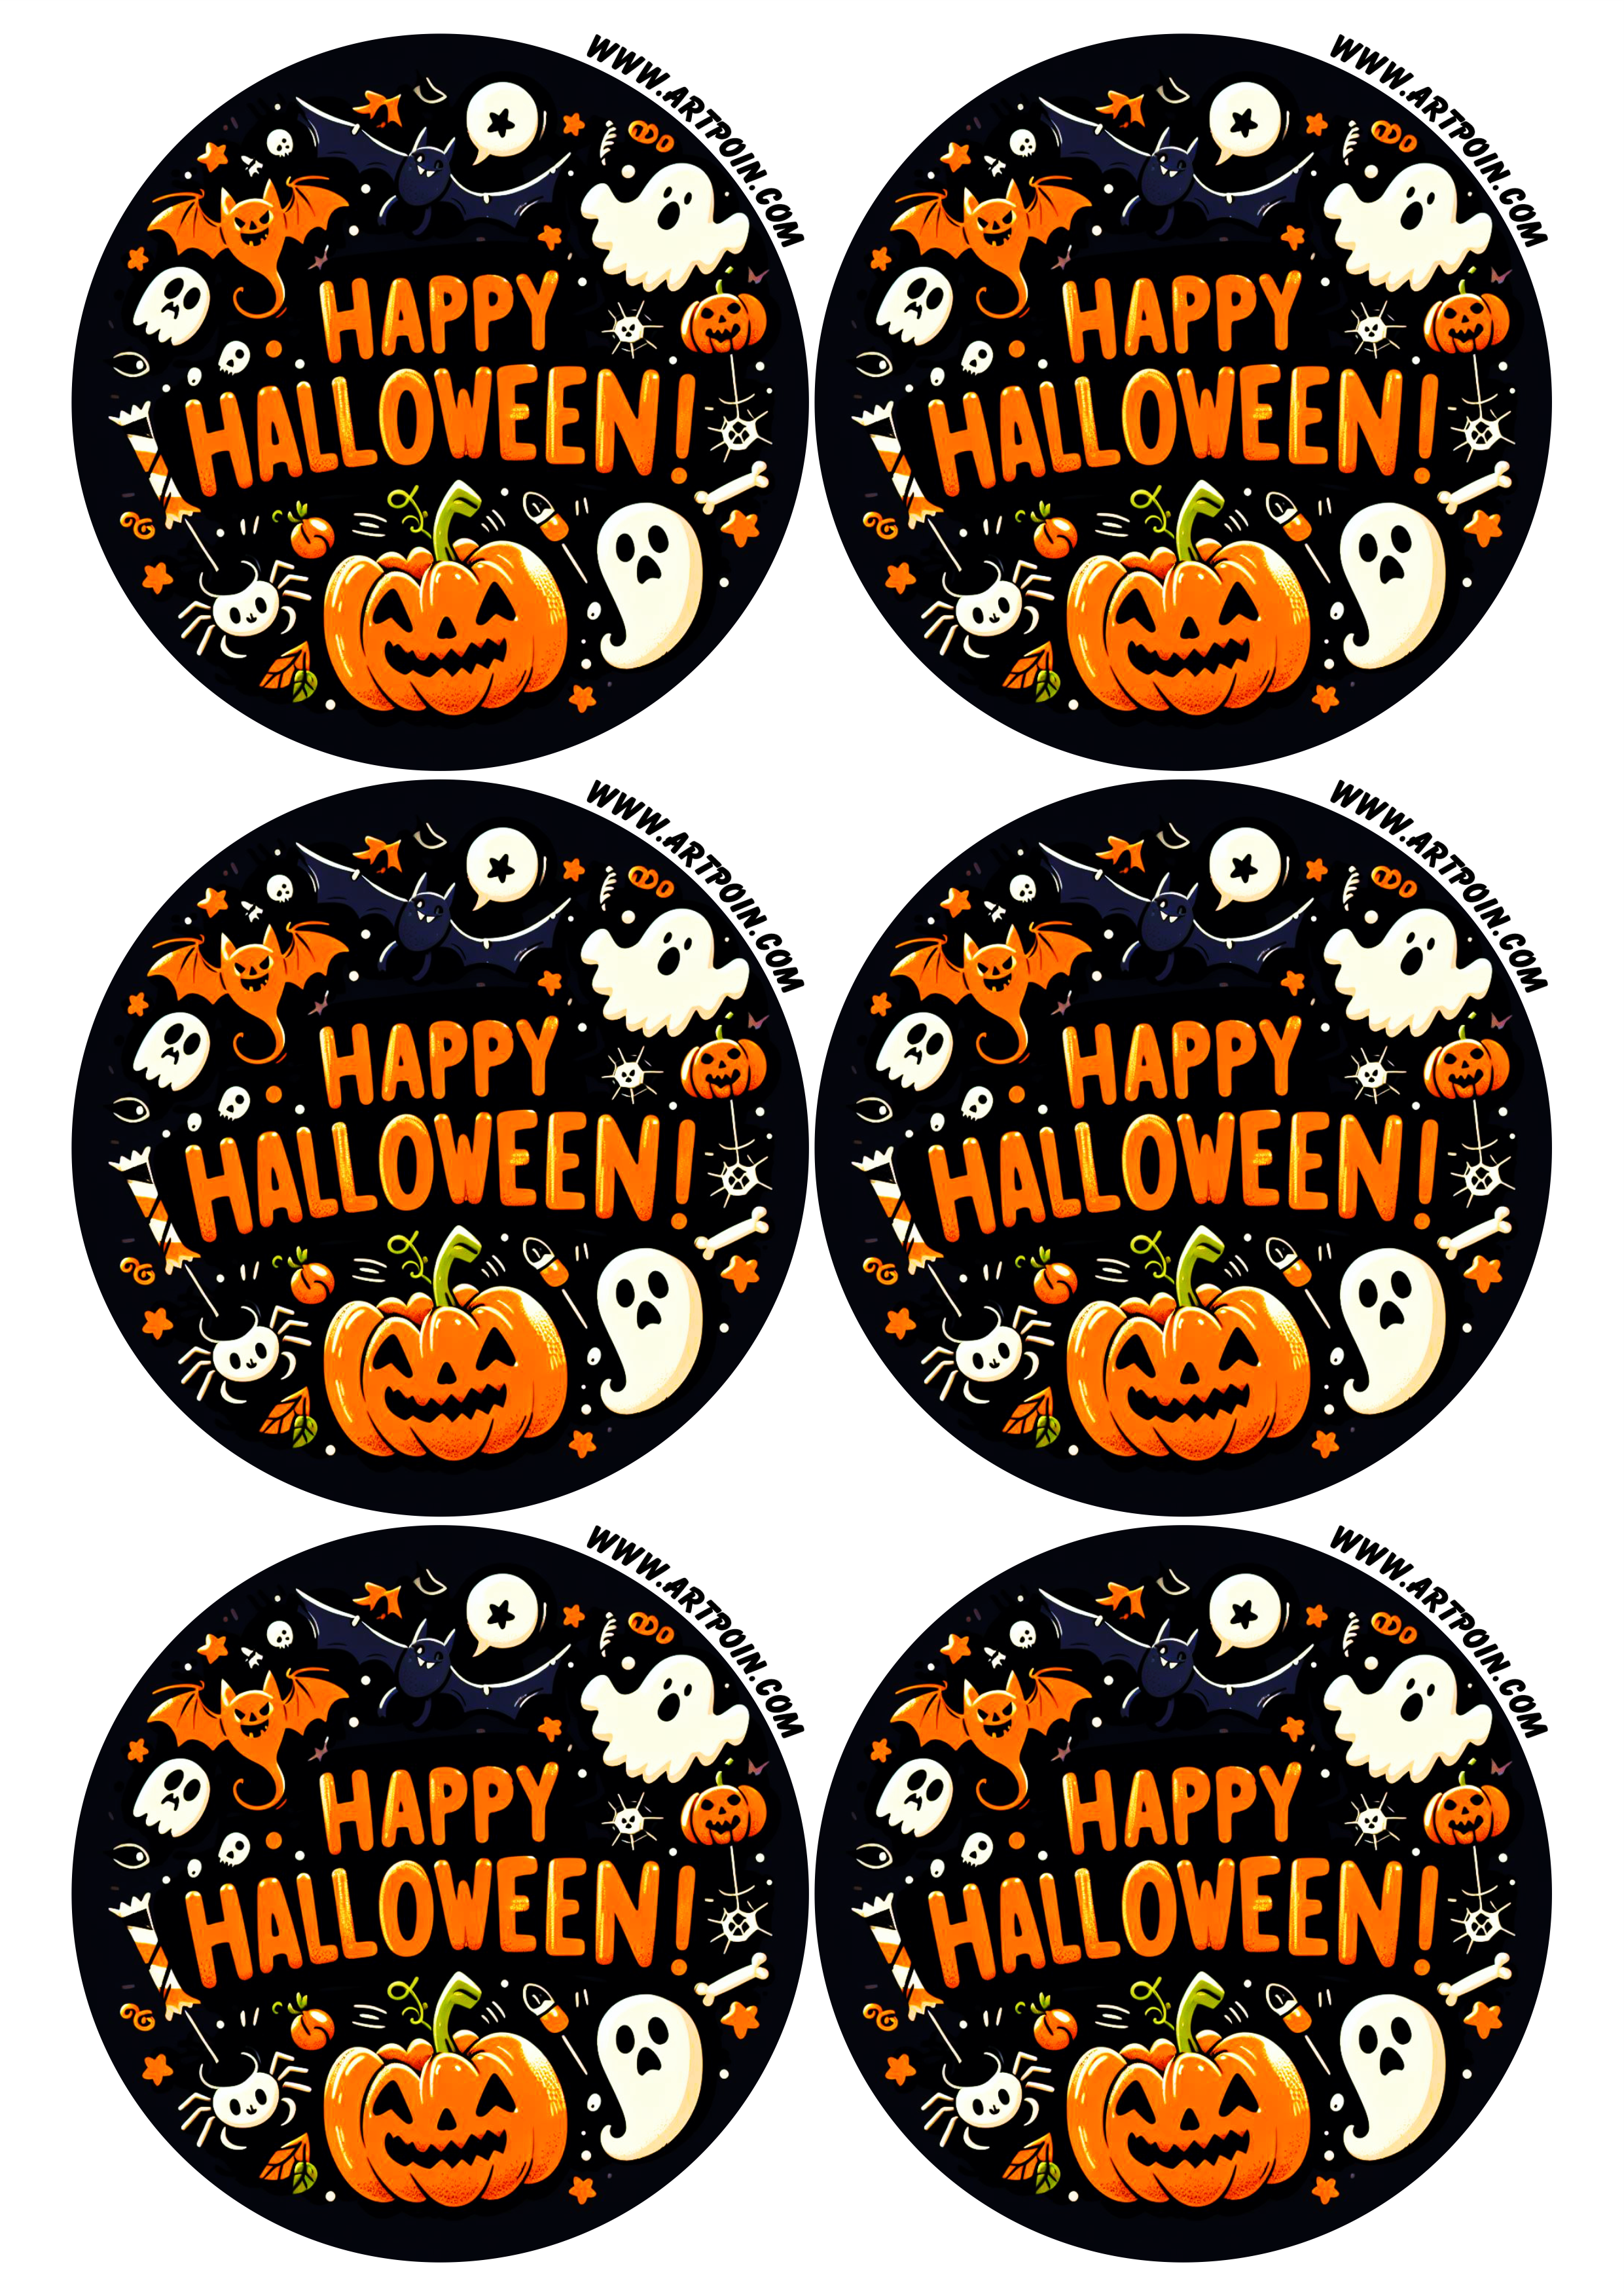 Happy Halloween adesivo redondo tag sticker assustador fantasma abóbora aranha gostosuras ou travessuras 6 imagens png